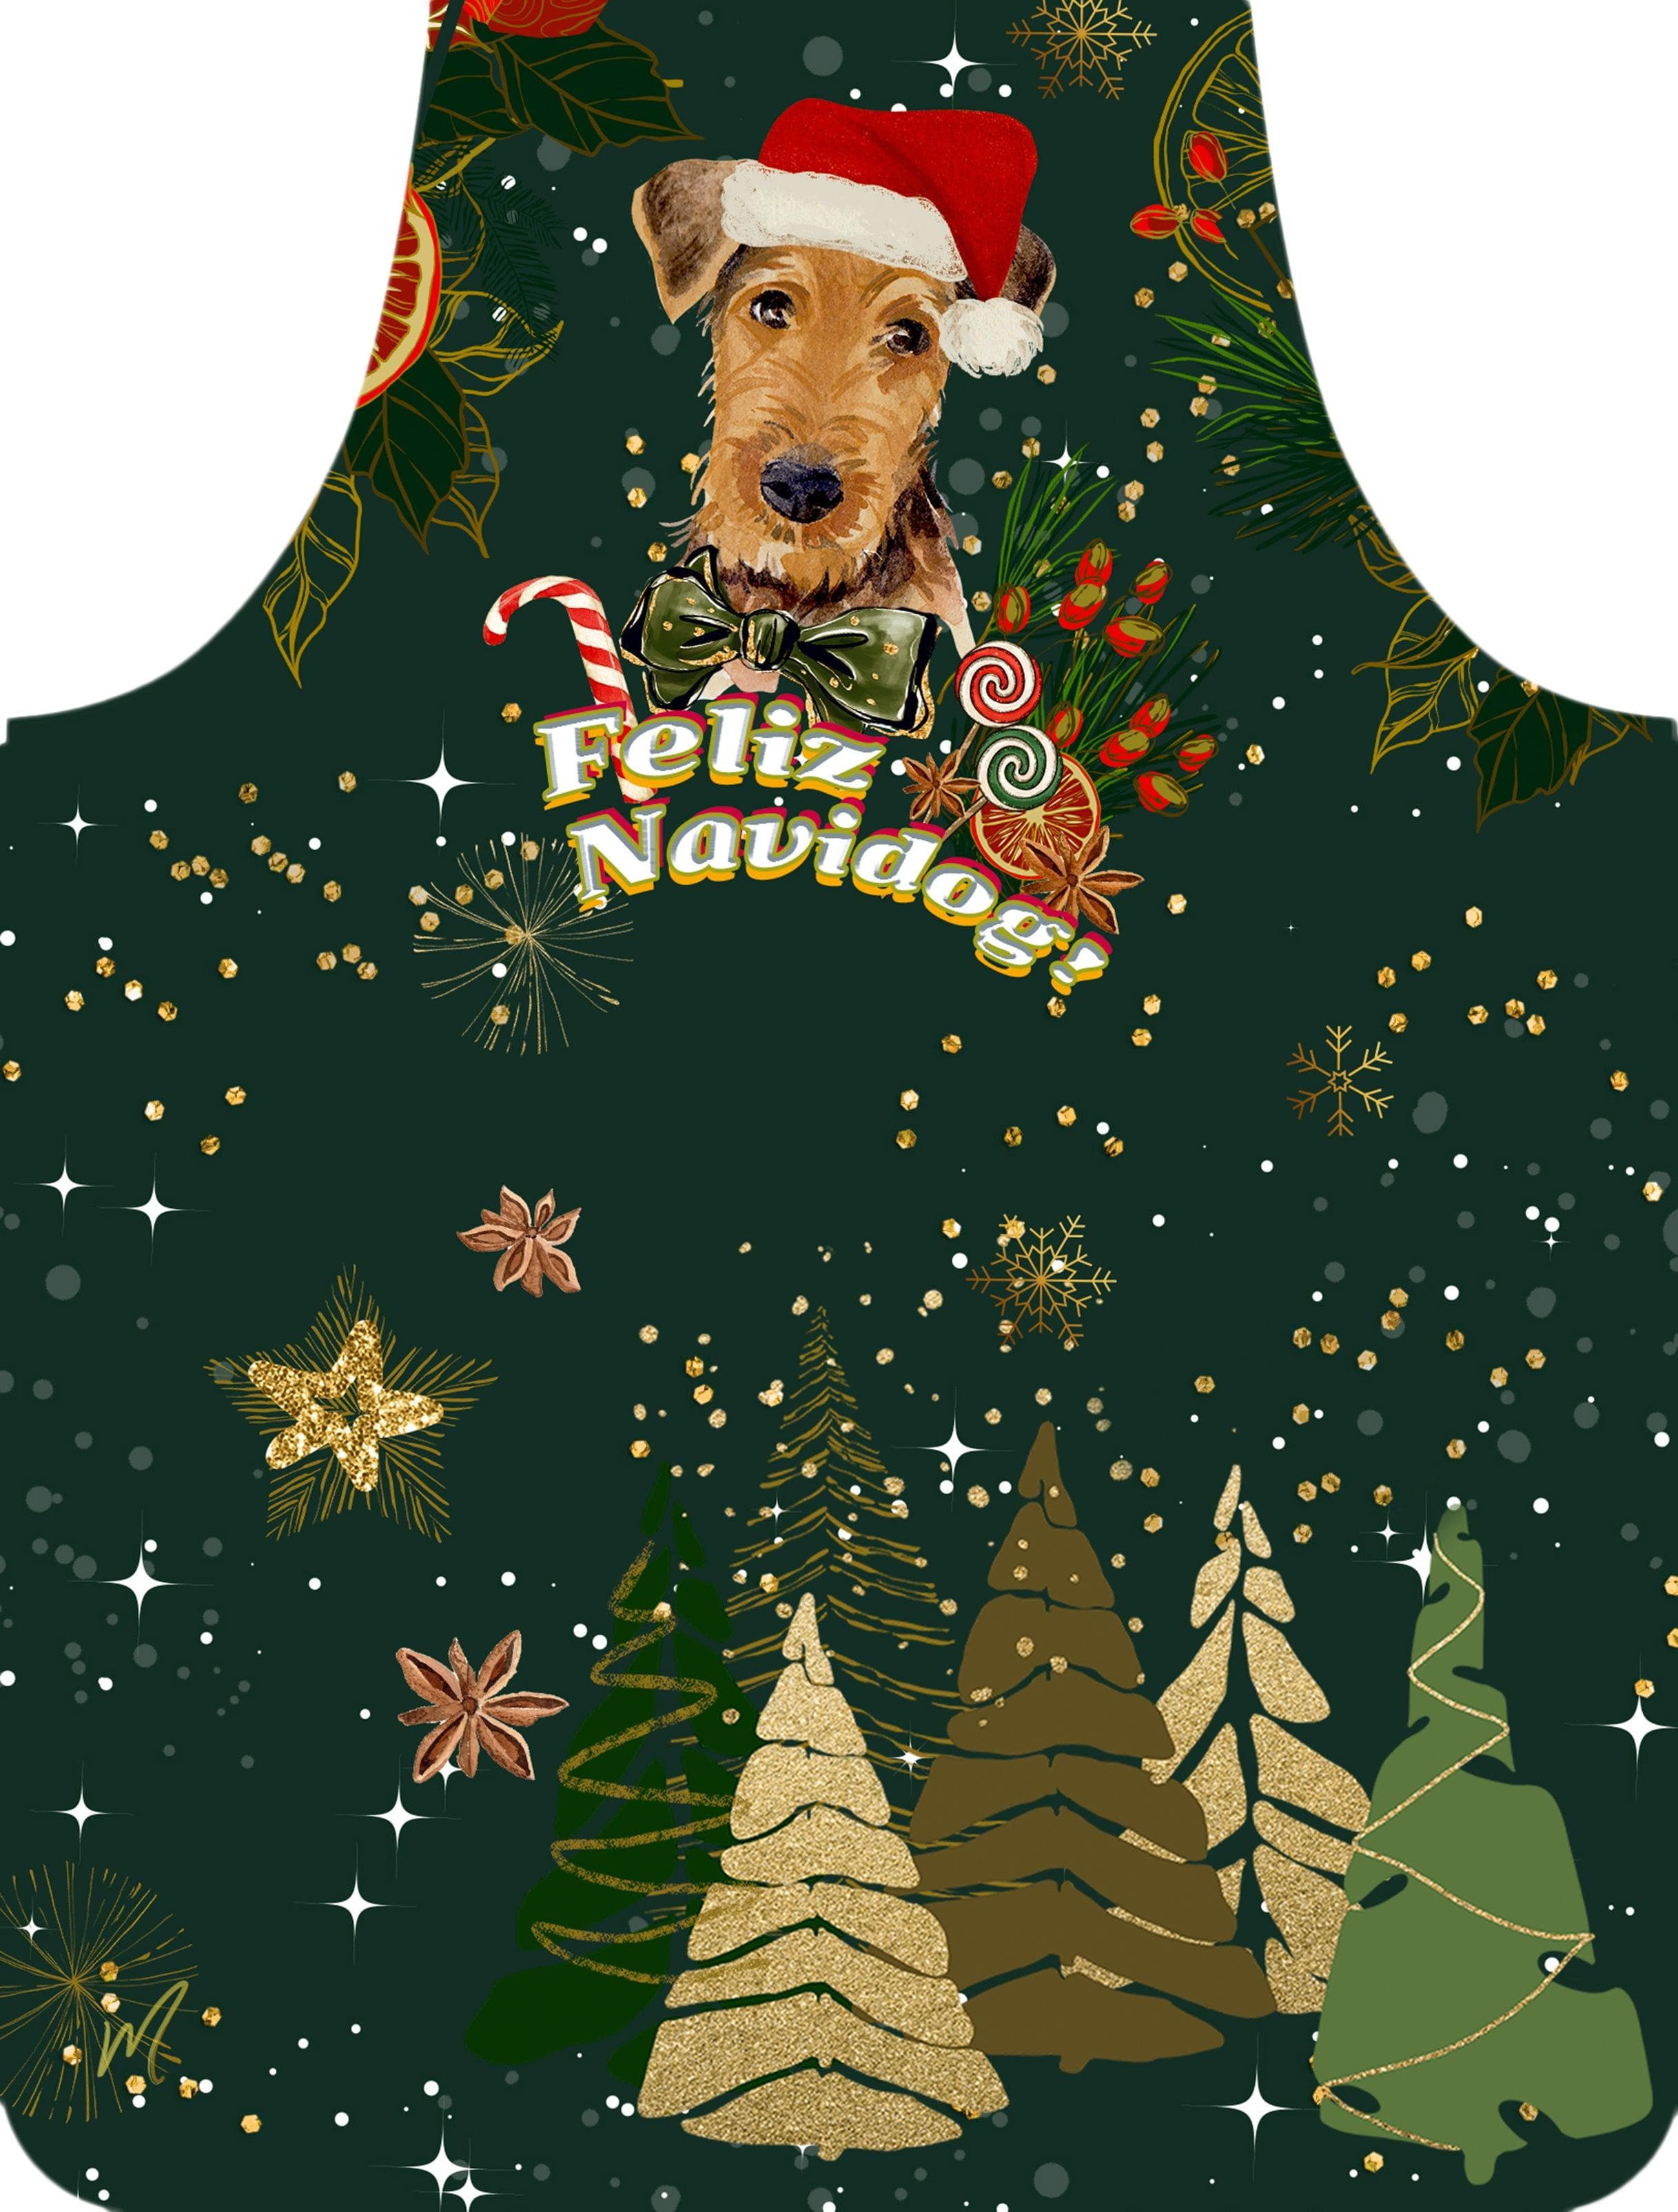 FELIZ NAVIDOG - Christmas Apron for Dog Lovers - MORO DESIGN GIFTS